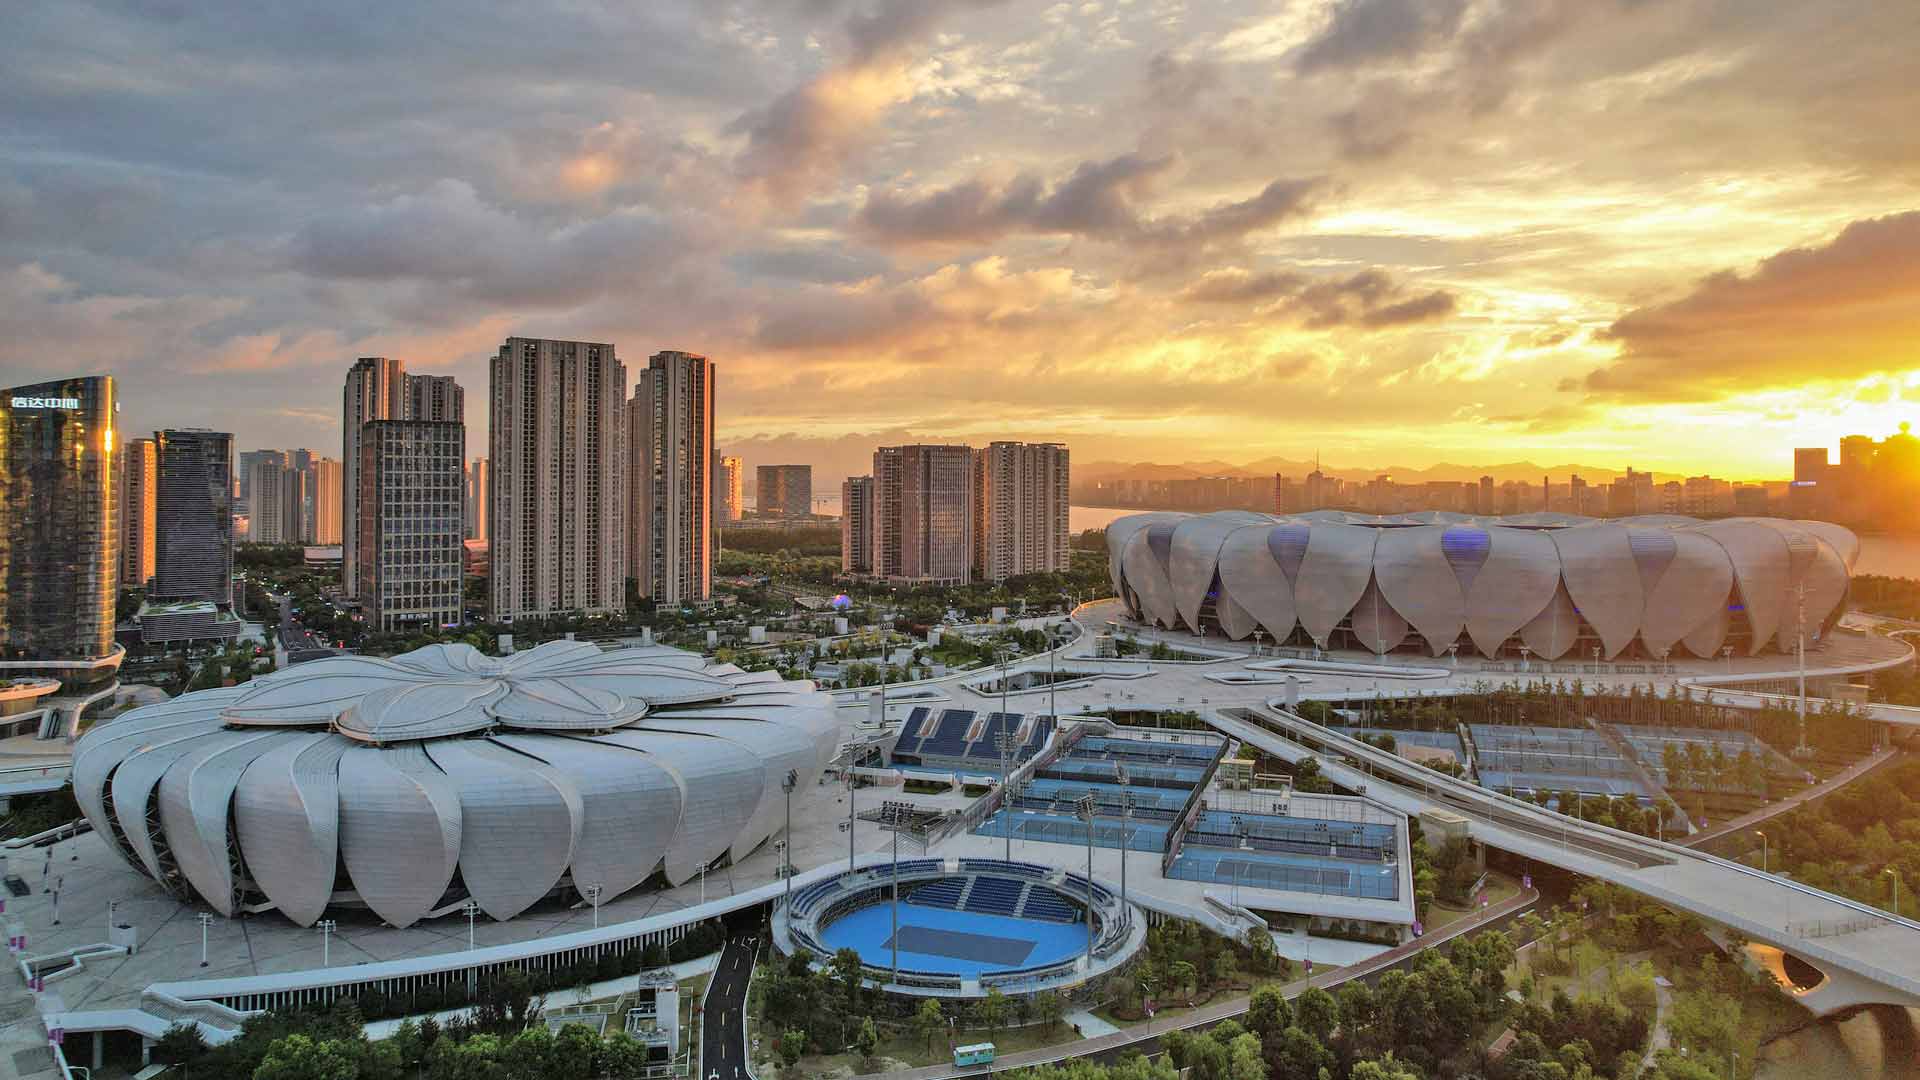 El centro de tenis el Centro de Deportes Olímpico de Hangzhou.